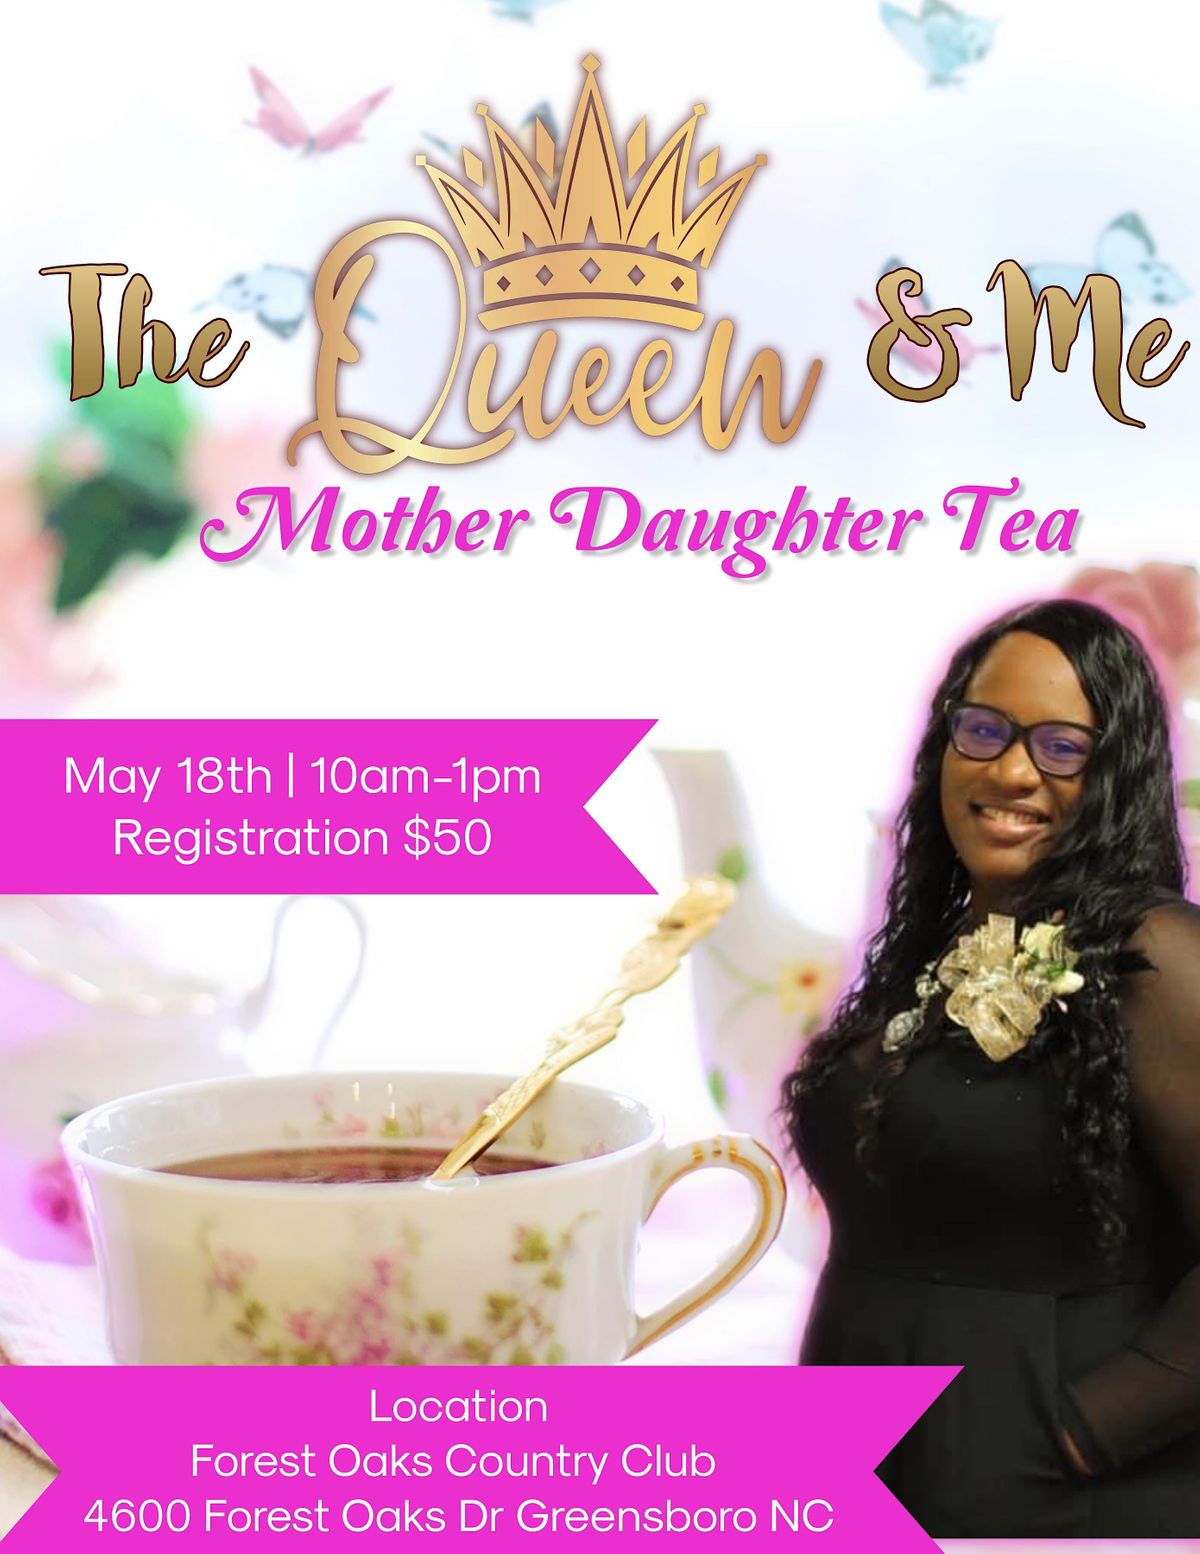 The Queen & Me Mother Daughter Tea